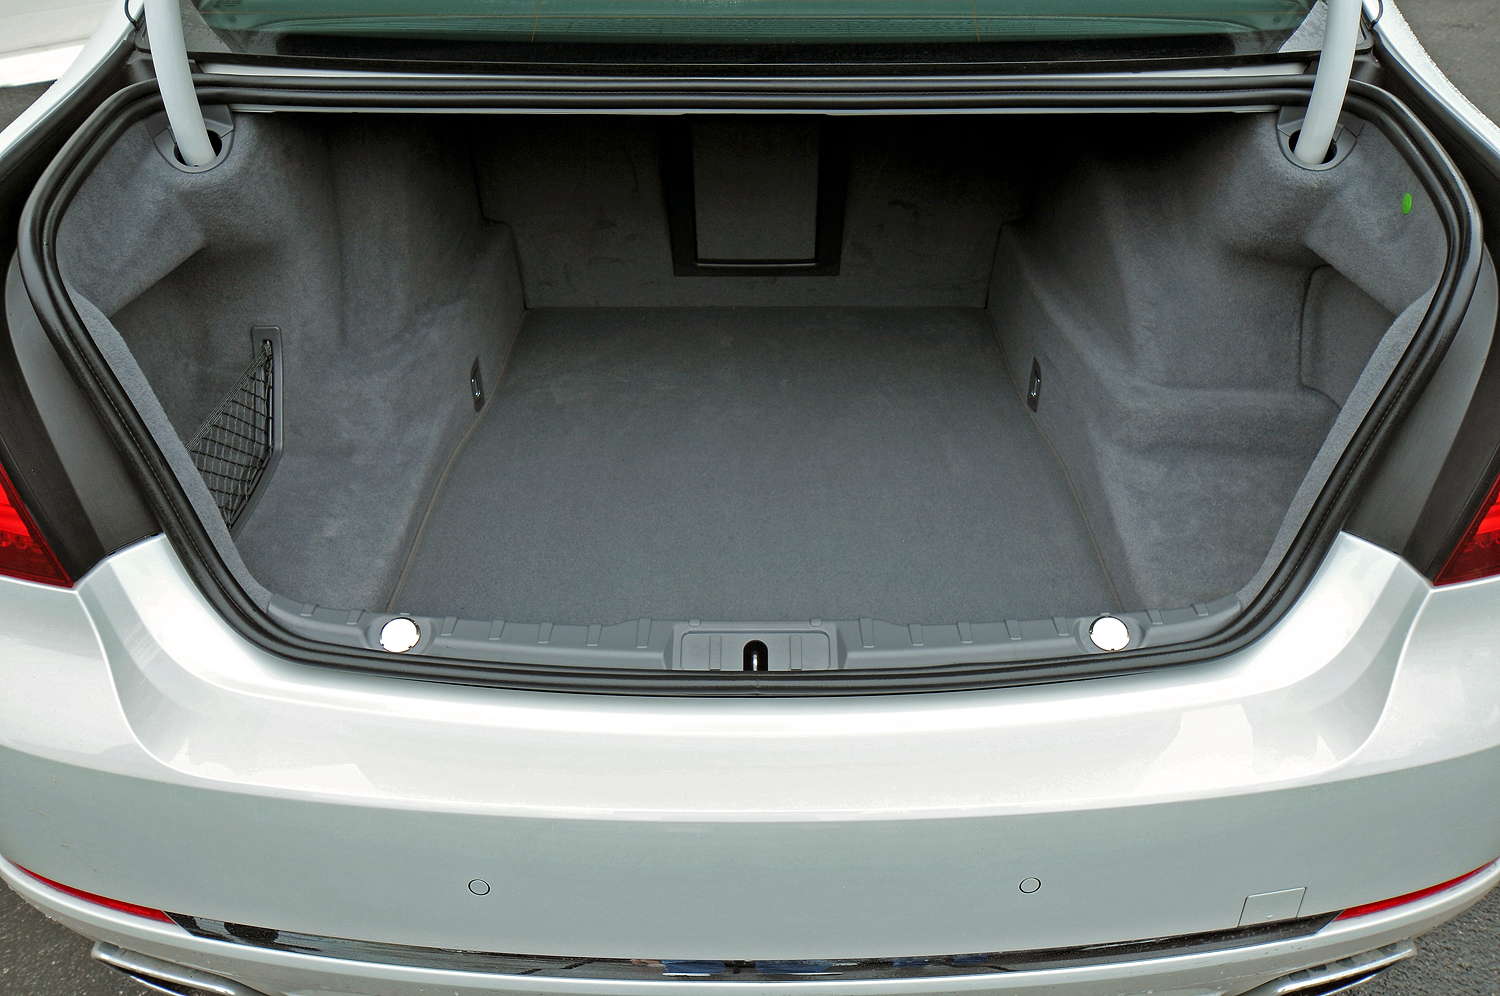 Foto: BMW 750i (F01 LCI), Kofferraum (vergrößert)